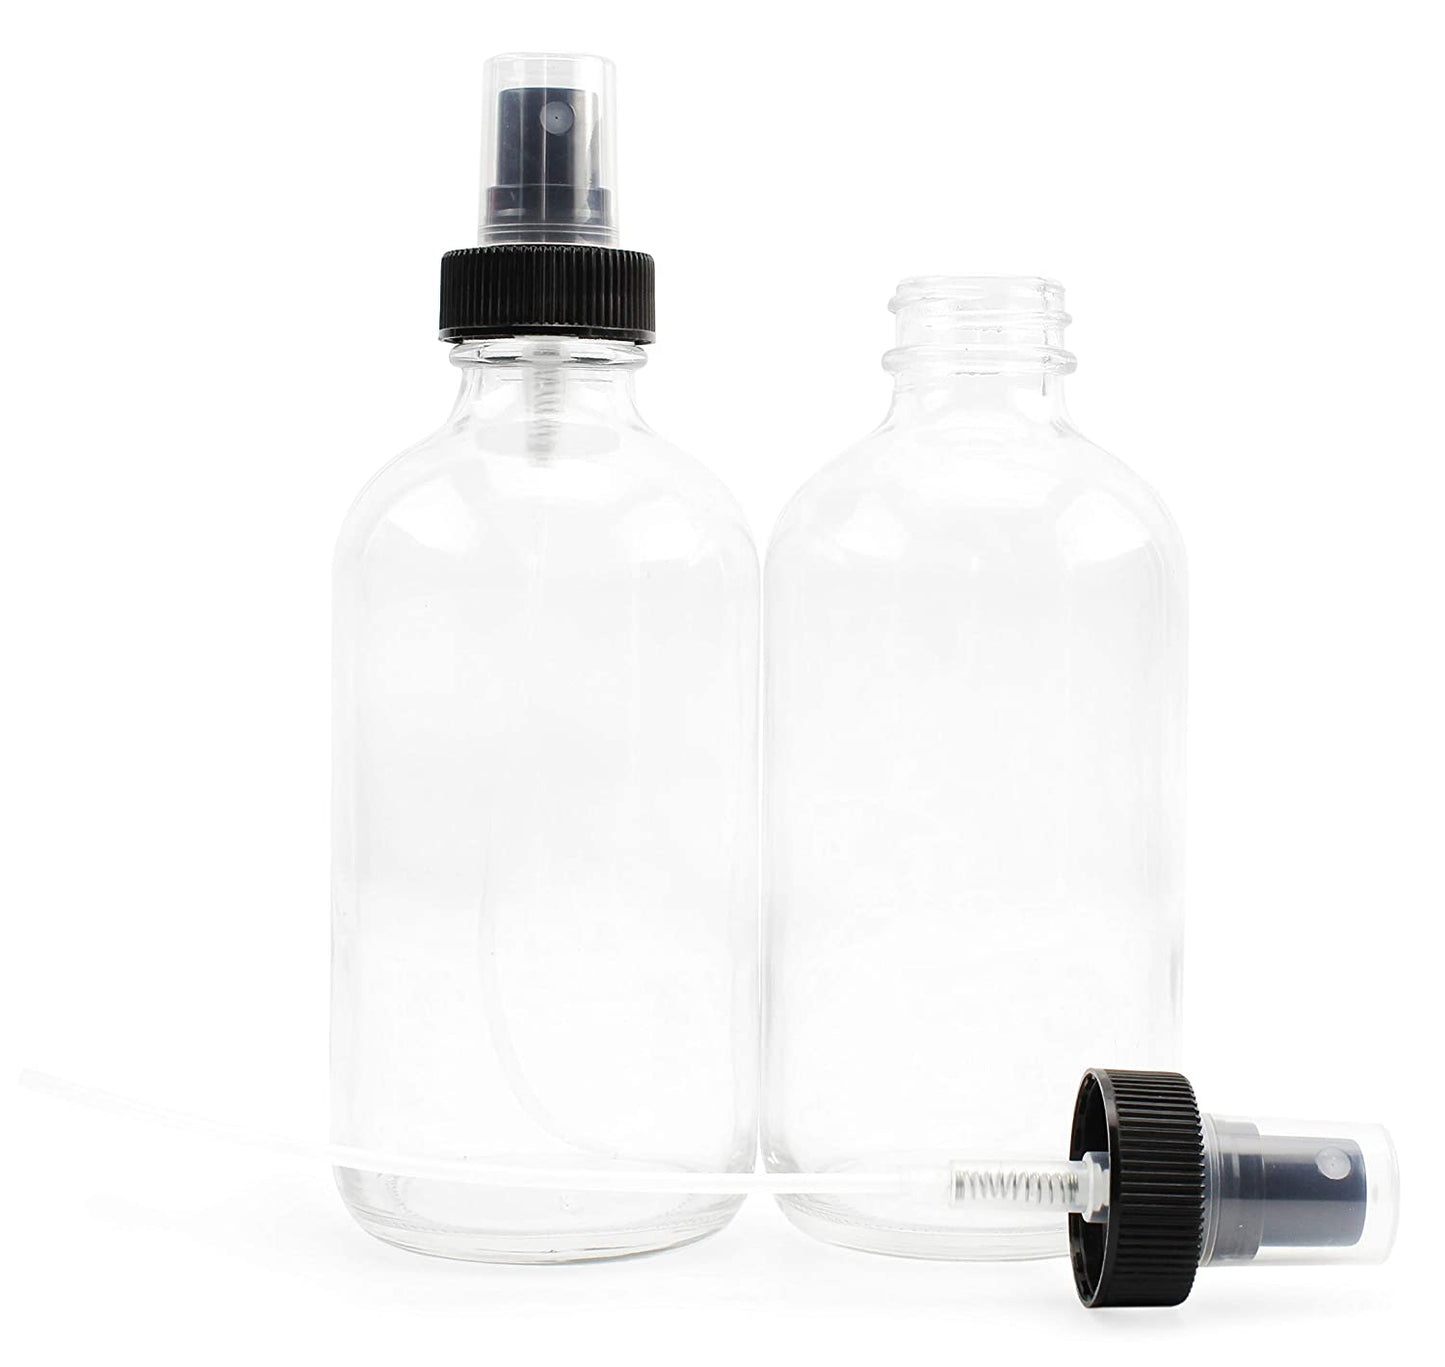 8oz Clear Glass Fine Mist Spray Bottles (4-Pack) - sh1630cb0rlh